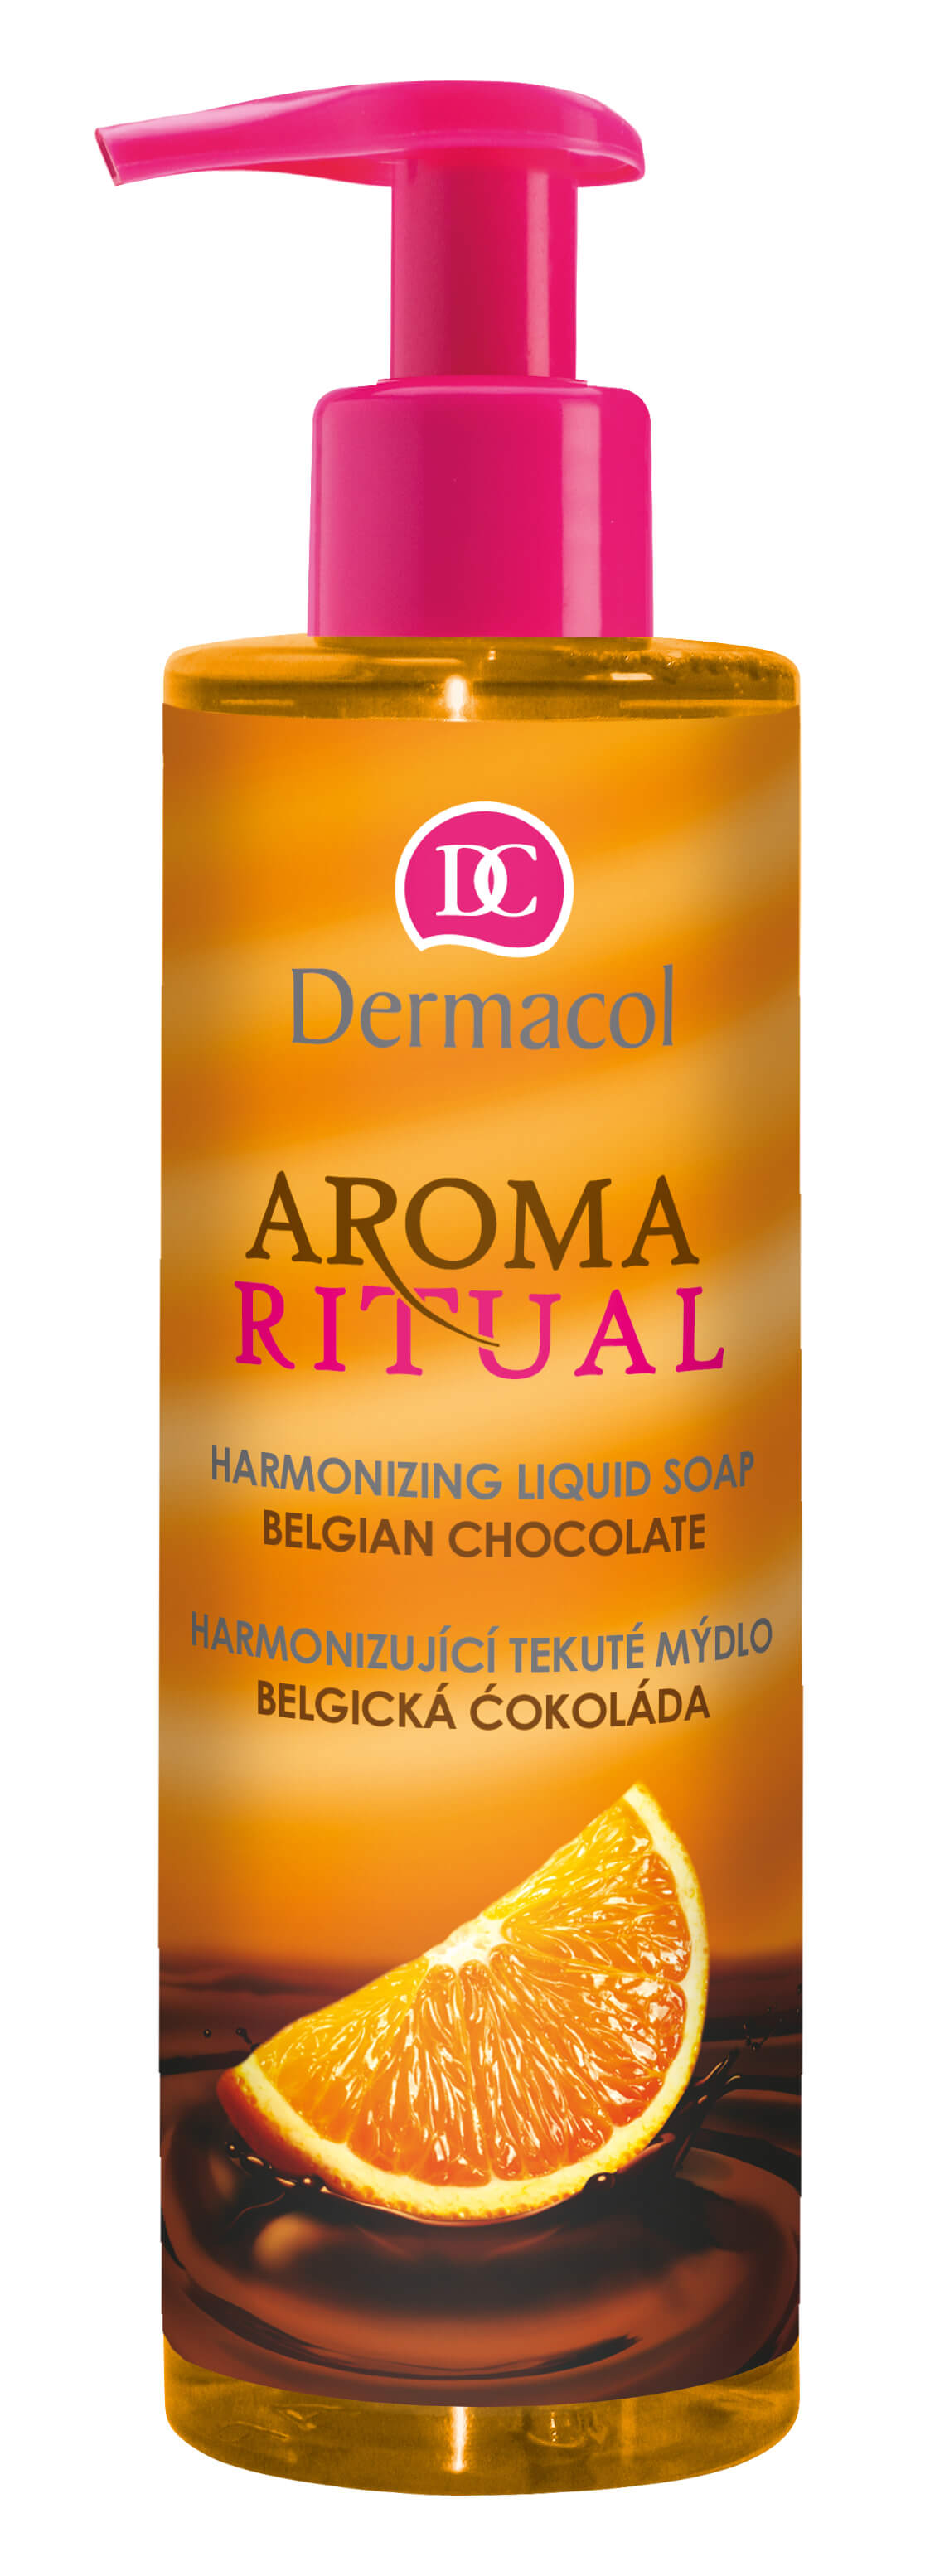 Harmonizující tekuté mýdlo Belgická Čokoláda s Pomerančem Aroma Ritual (Harmonizing Liquid Soap)